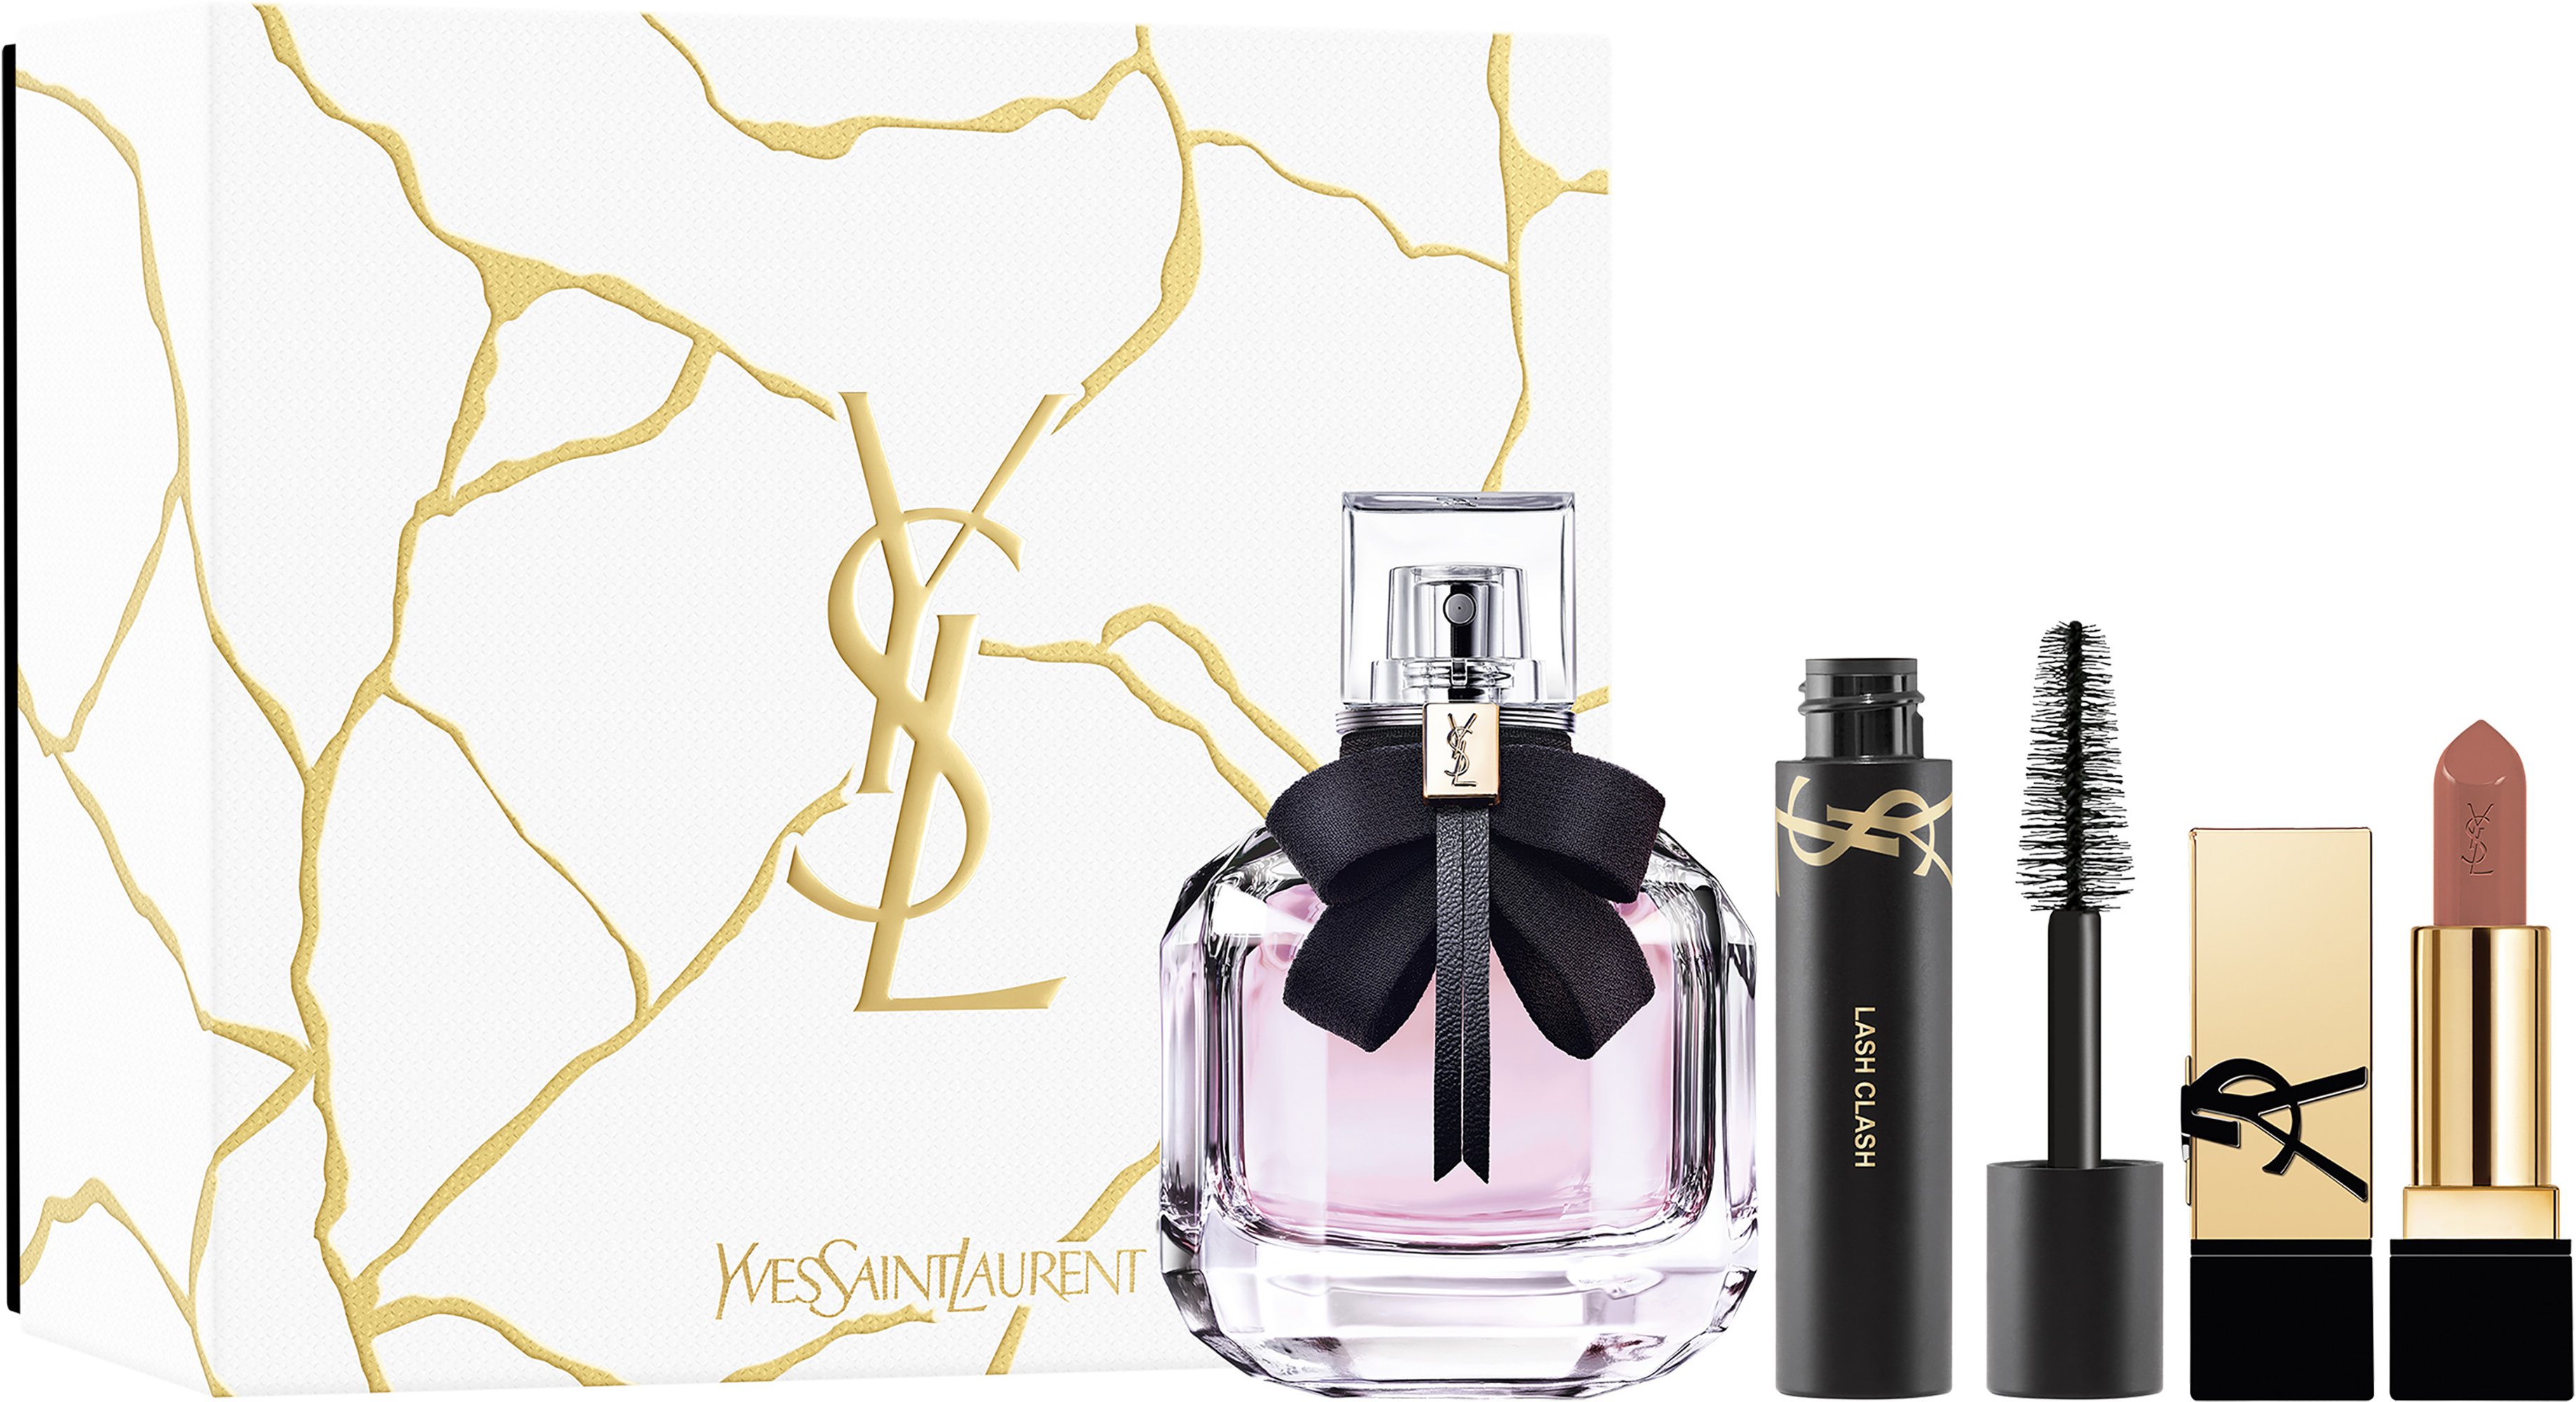 Yves Saint Laurent unveils feminine fragrance Libre